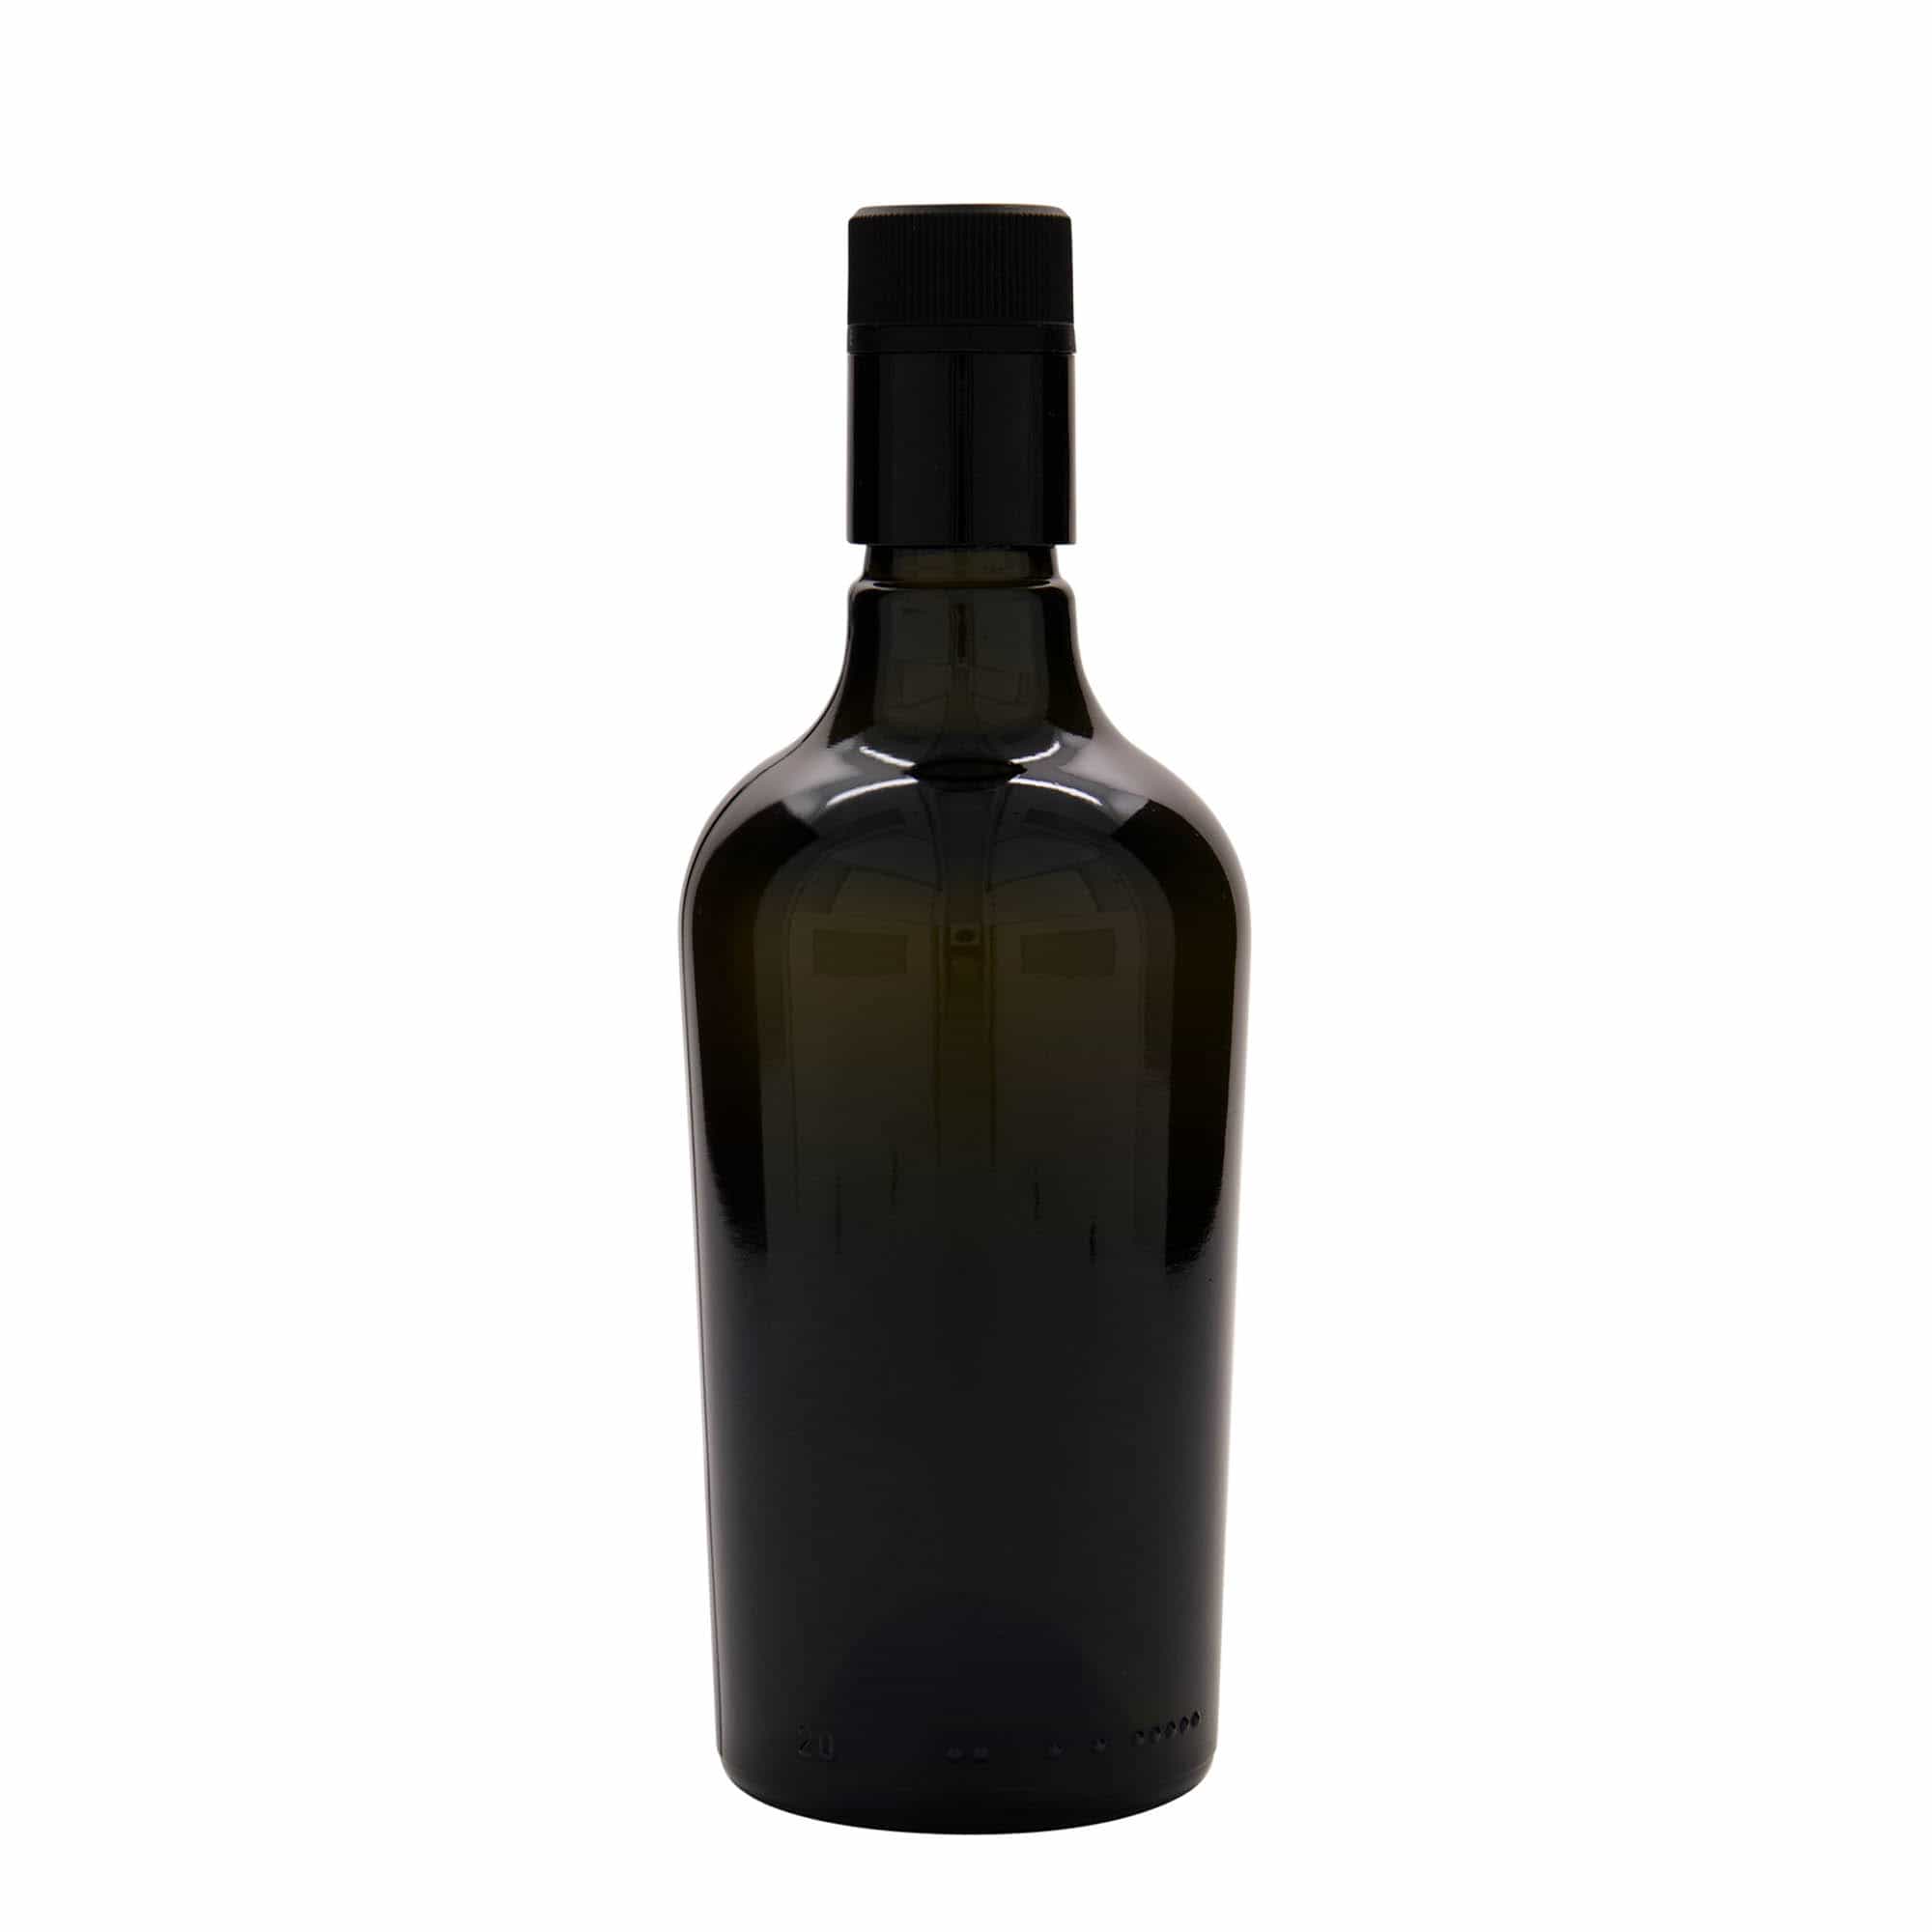 500 ml vinäger-/oljeflaska 'Oleum', glas, antikgrön, mynning: DOP